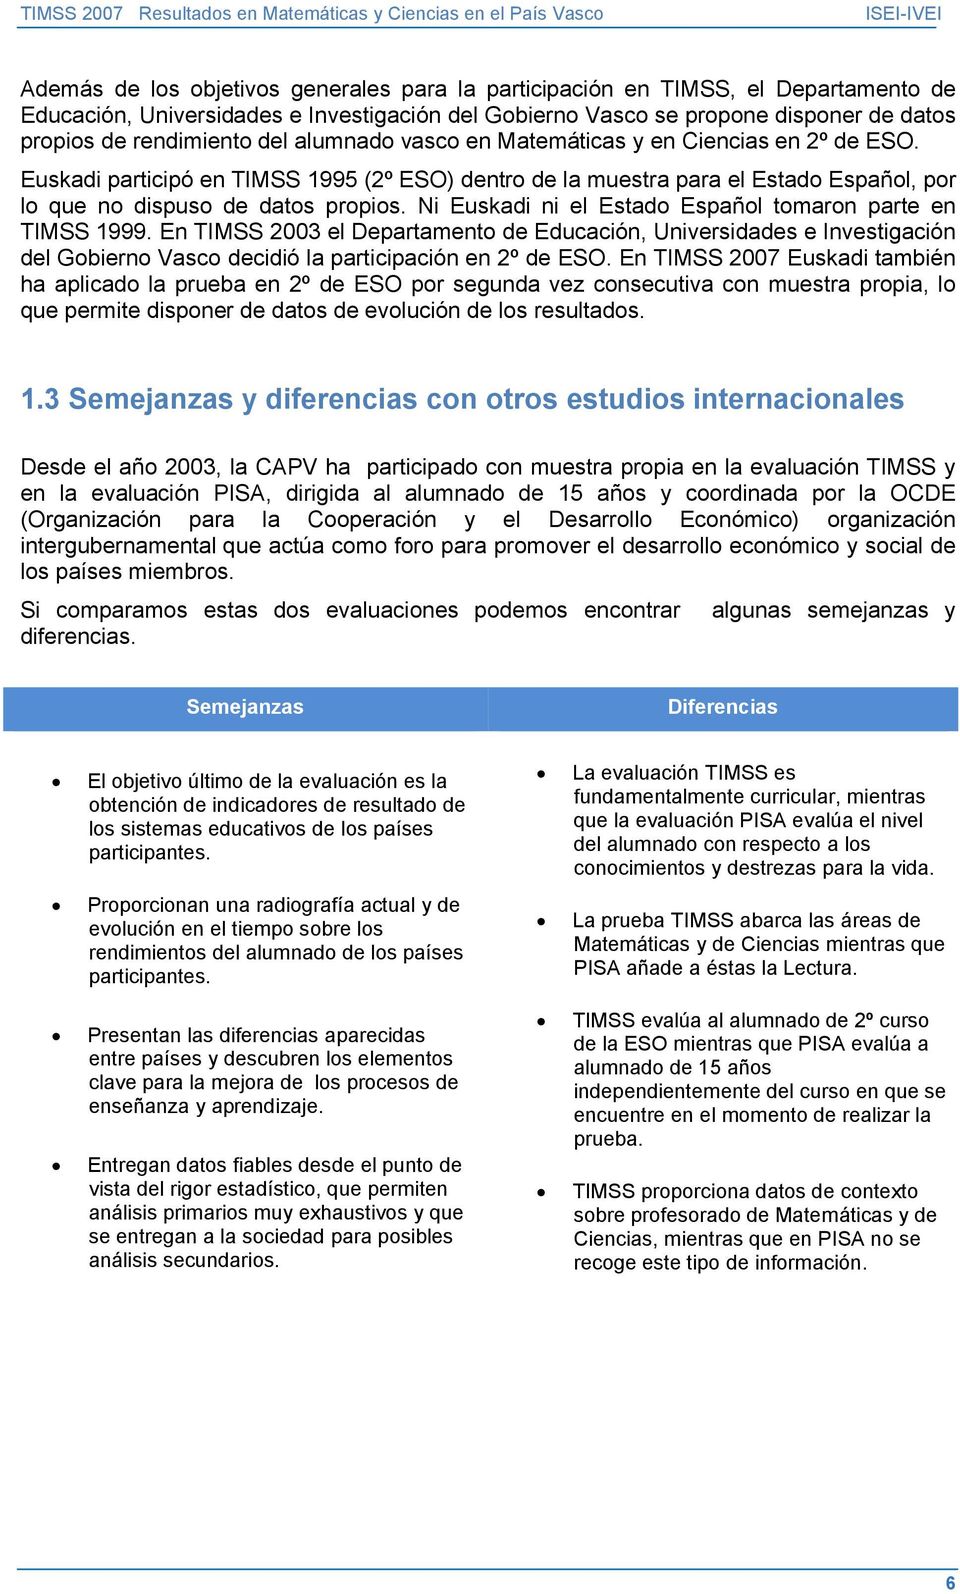 Ni Euskadi ni el Estado Español tomaron parte en TIMSS 1999. En TIMSS 2003 el Departamento de Educación, Universidades e Investigación del Gobierno Vasco decidió la participación en 2º de ESO.